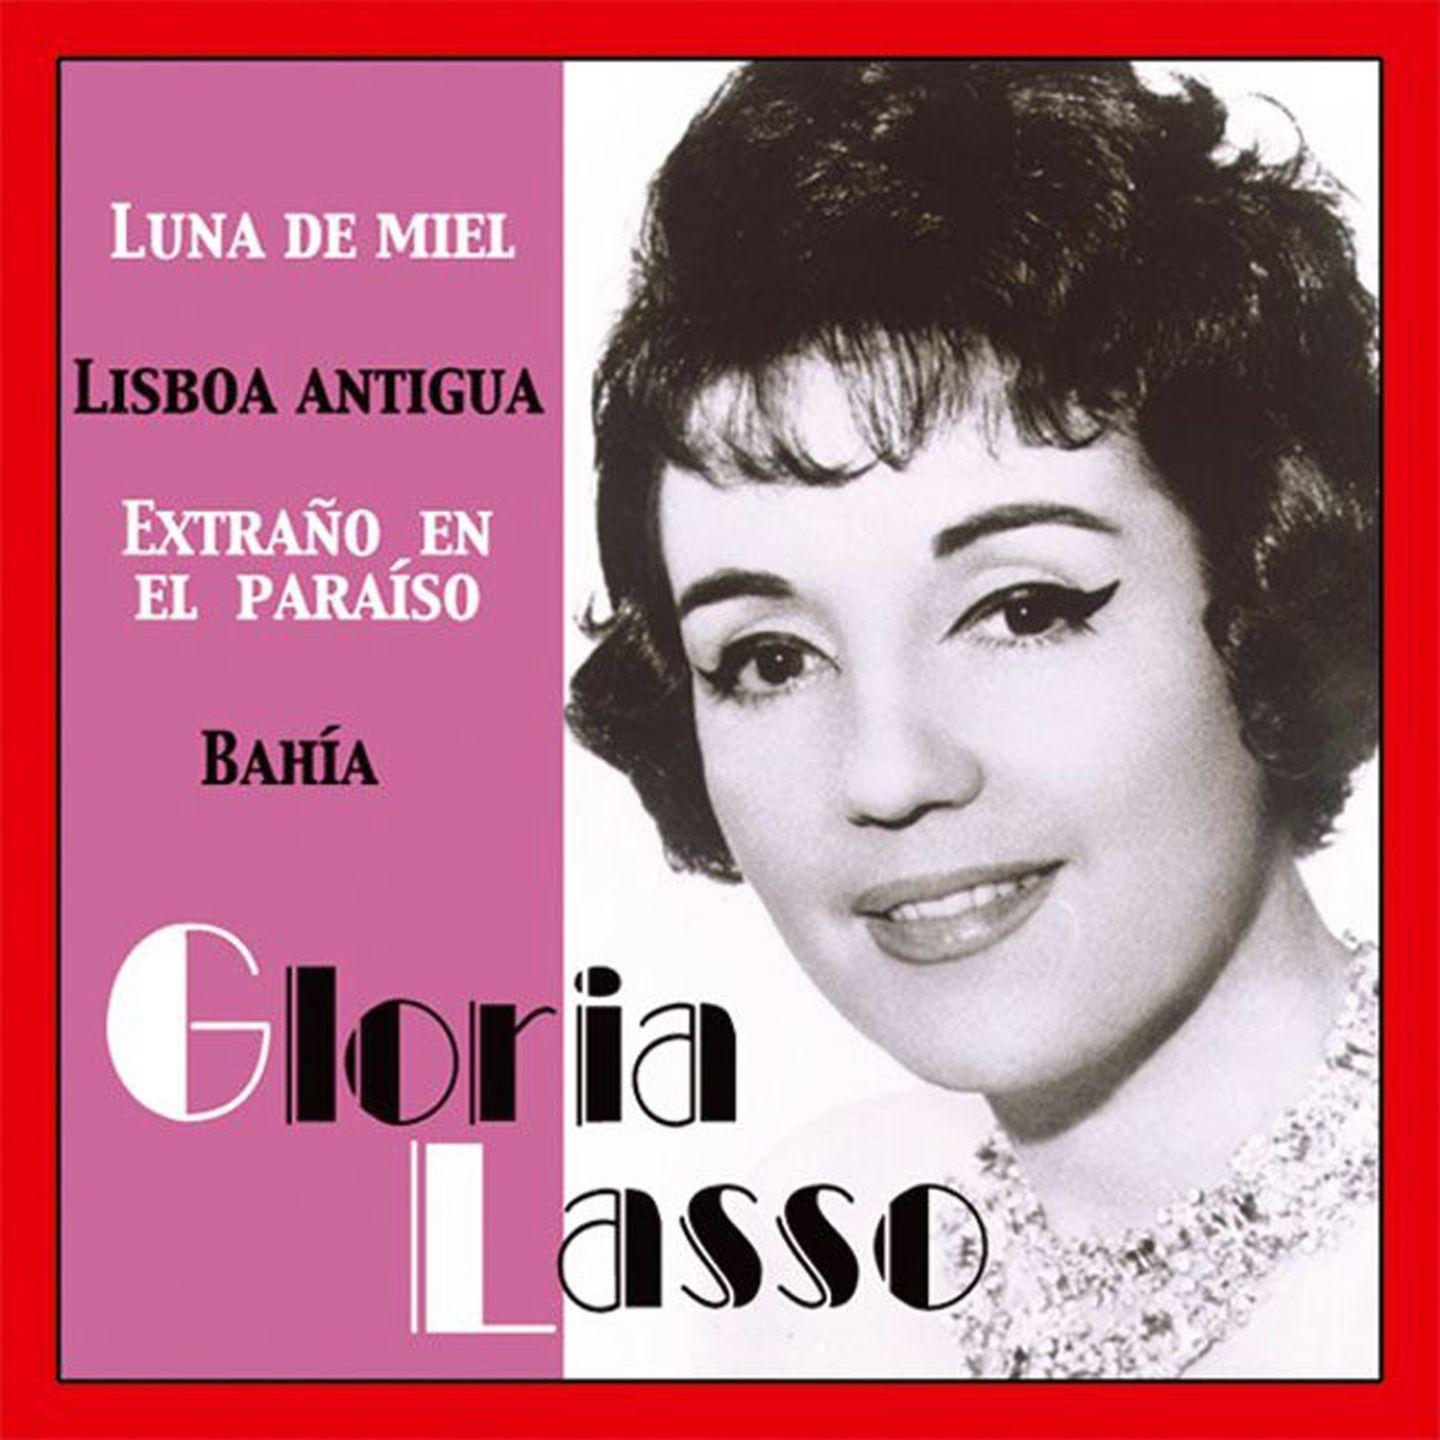 Постер альбома Gloria Lasso